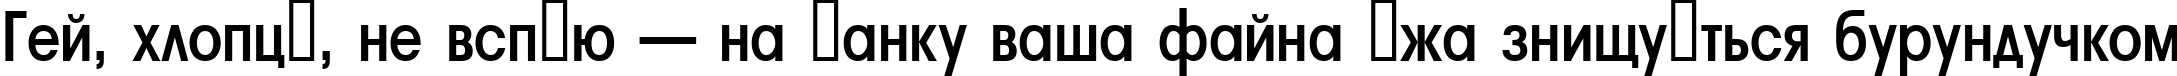 Пример написания шрифтом a_AvanteLtNr SemiBold текста на украинском